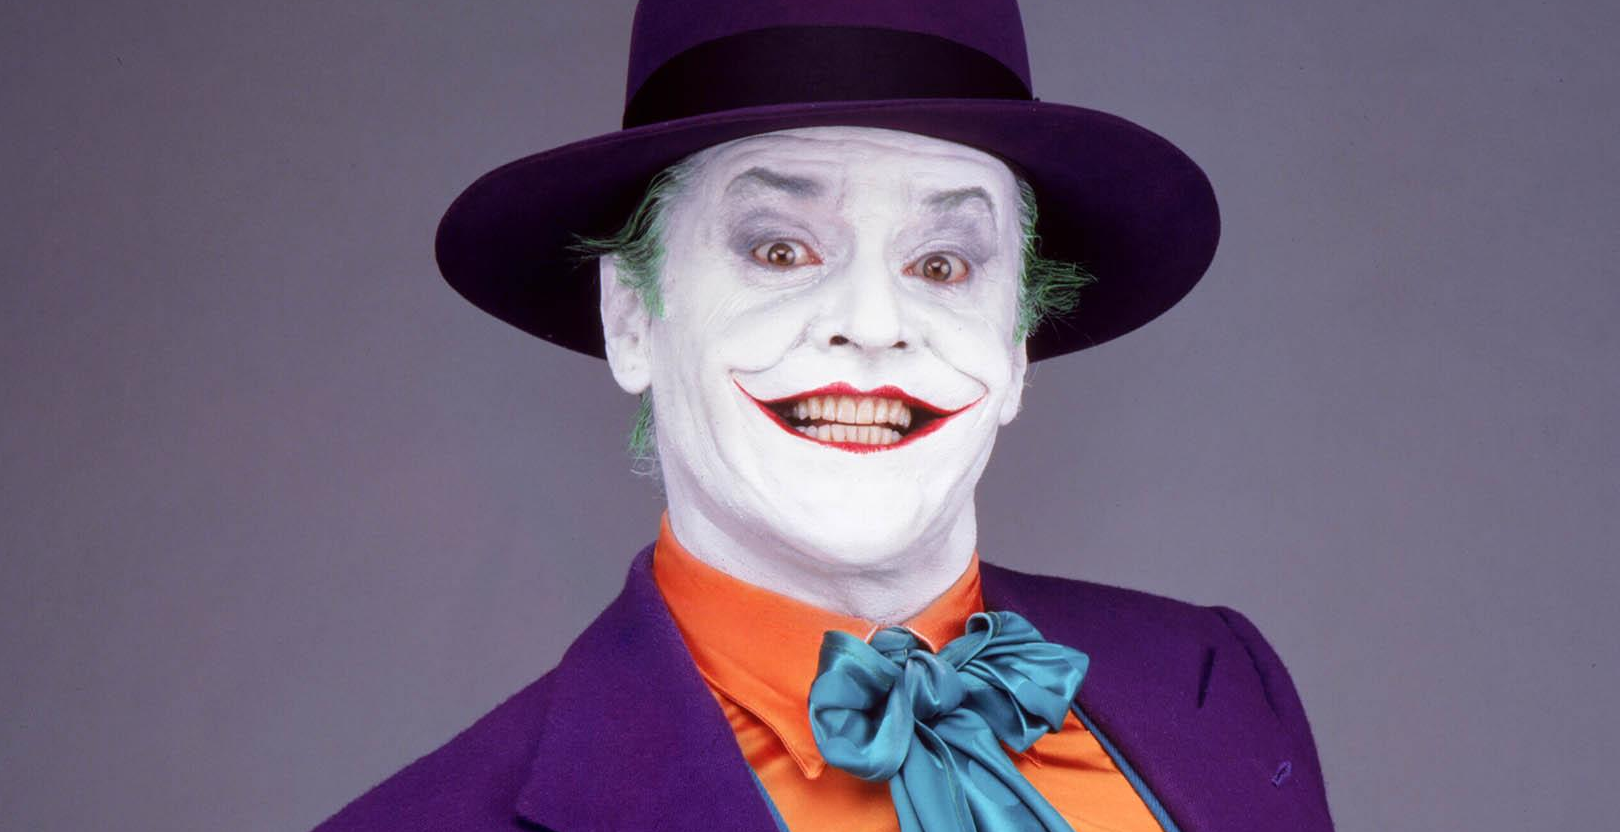 Jack Nicholson as The Joker in Batman (1989)